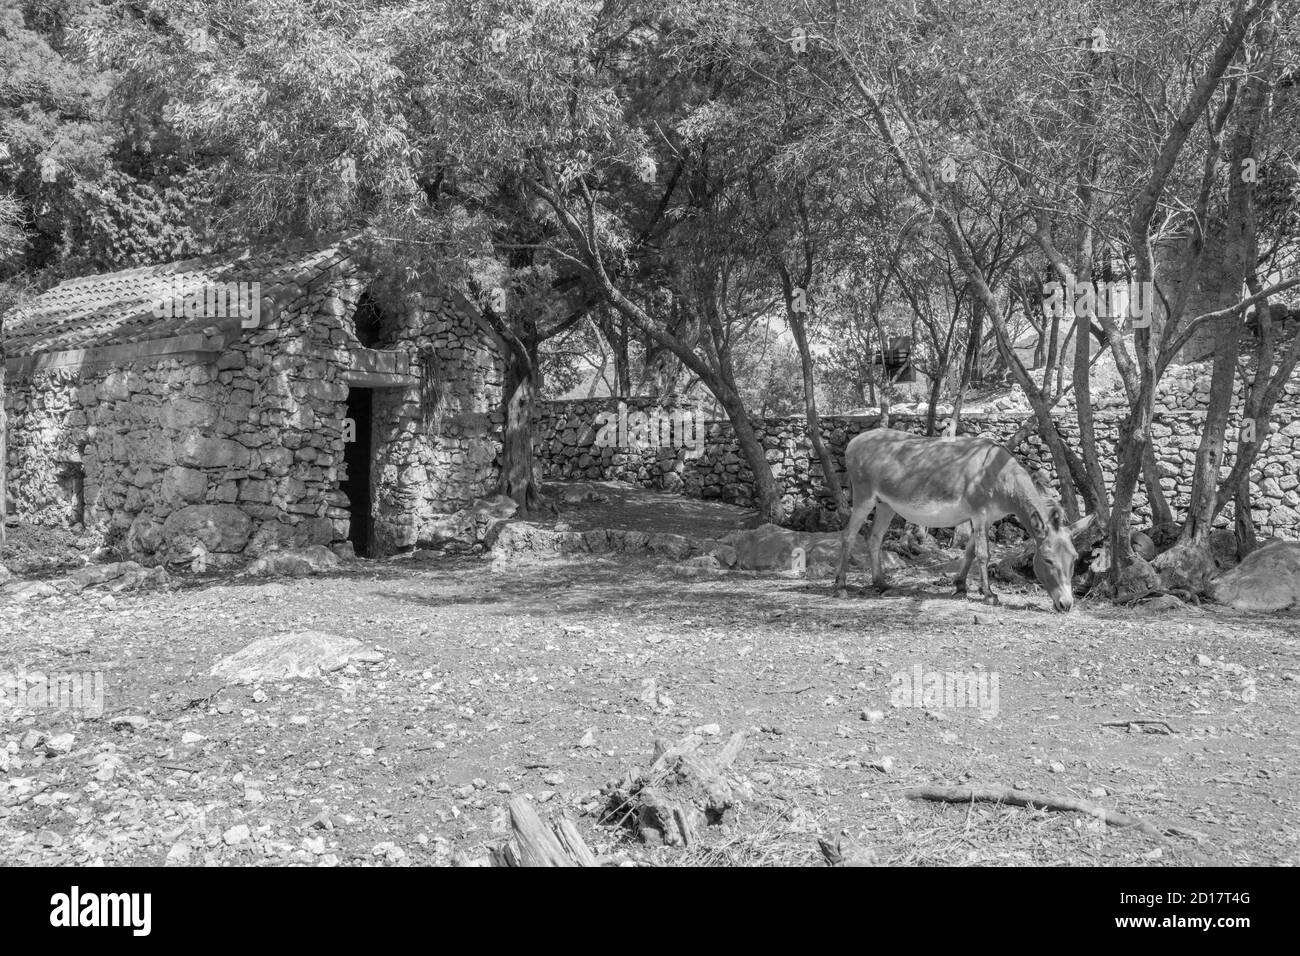 Croatie - l'âne dans le petit jardin du monastère bénédictin de Sainte-Marie sur l'île de Mljet. Banque D'Images